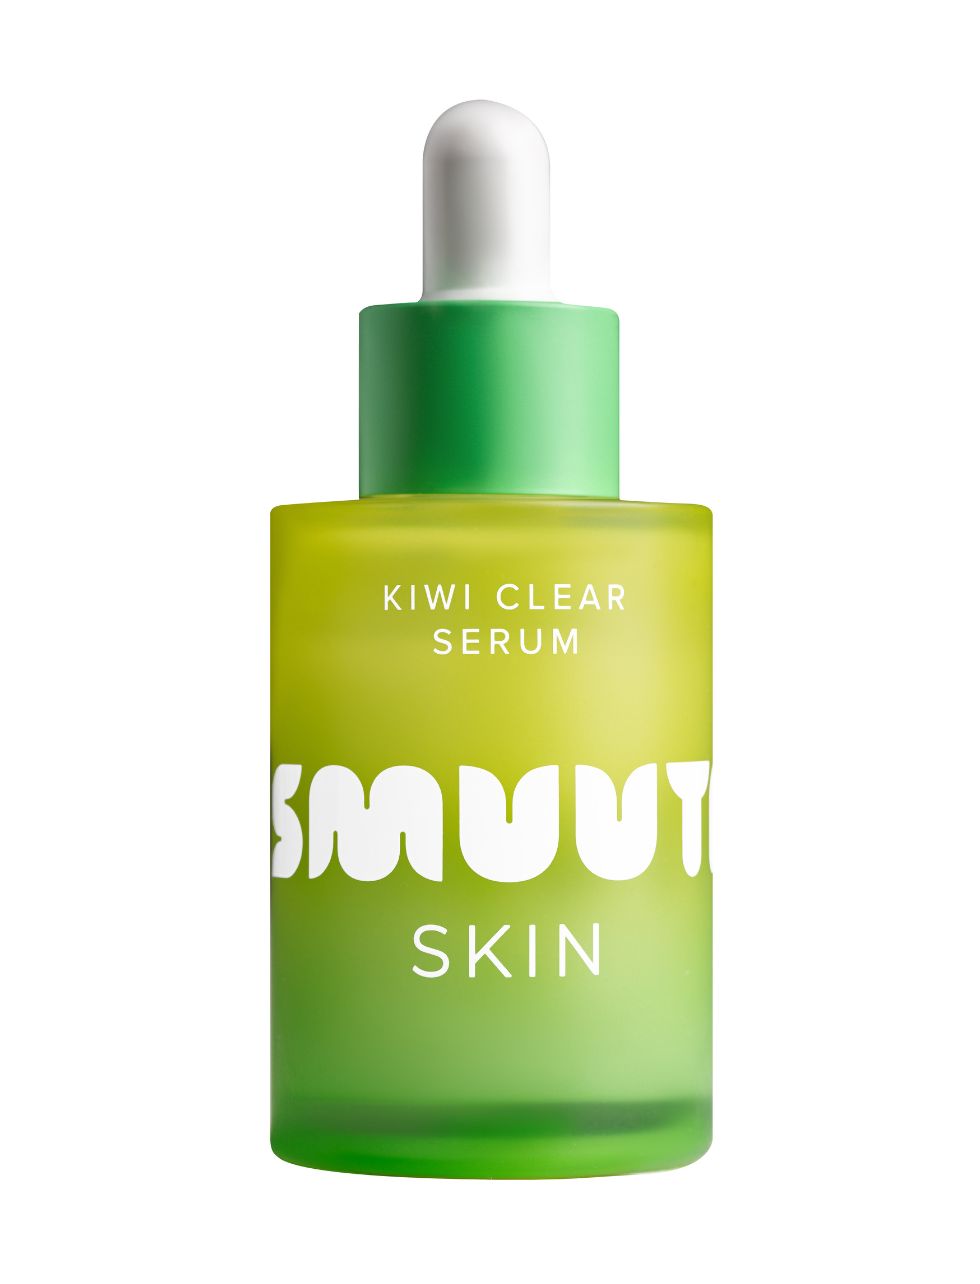 Smuuti Skin Kiwi Clear Serum - Seerumi 30 ml